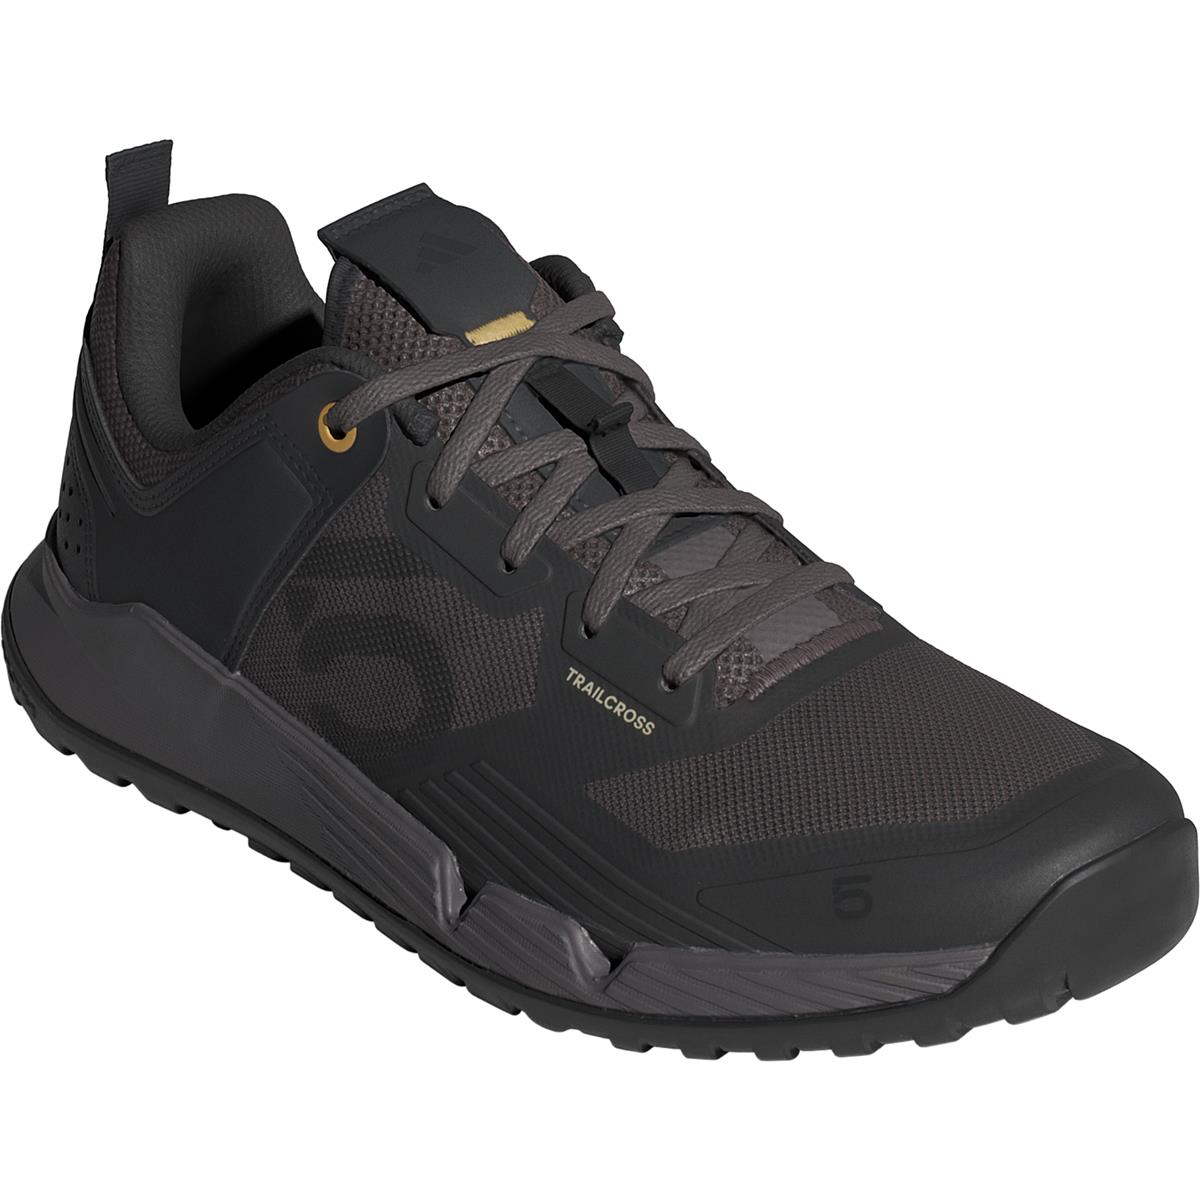 Five Ten MTB-Schuhe Trailcross XT Charcoal/Carbon/Oat